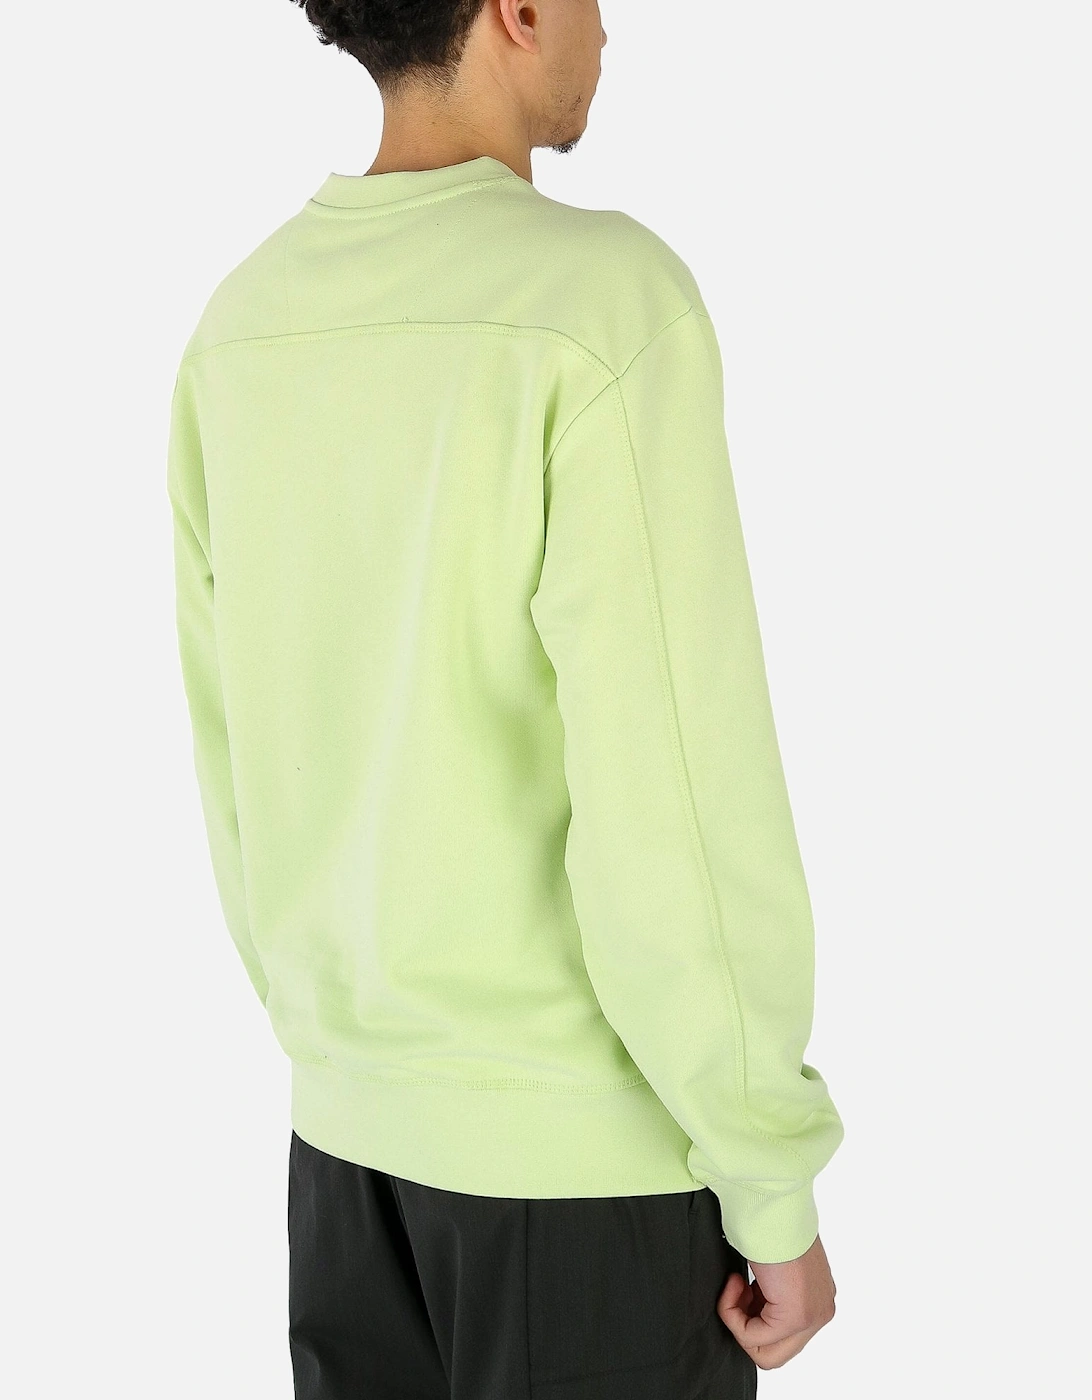 Siren Lime Sweatshirt